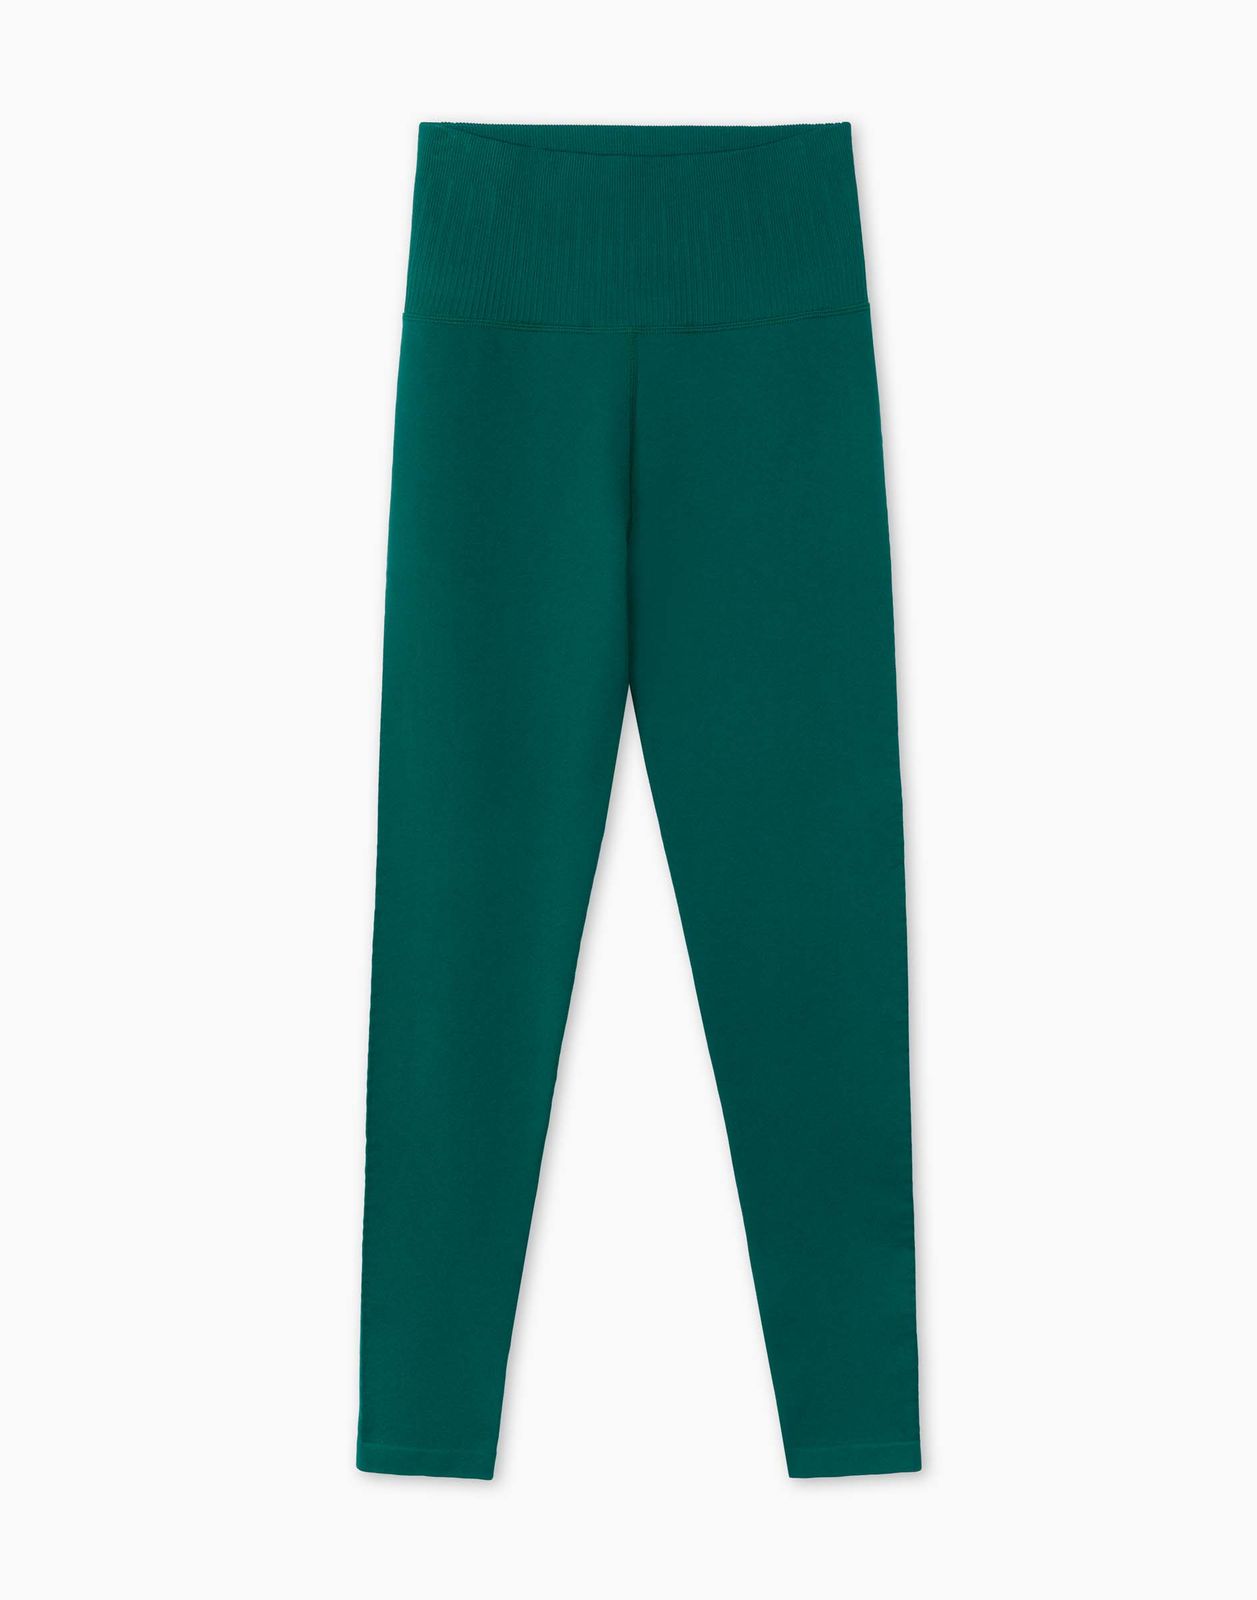 Спортивные леггинсы женские Gloria Jeans GRT000422 зеленые XXS/158 (36-38)